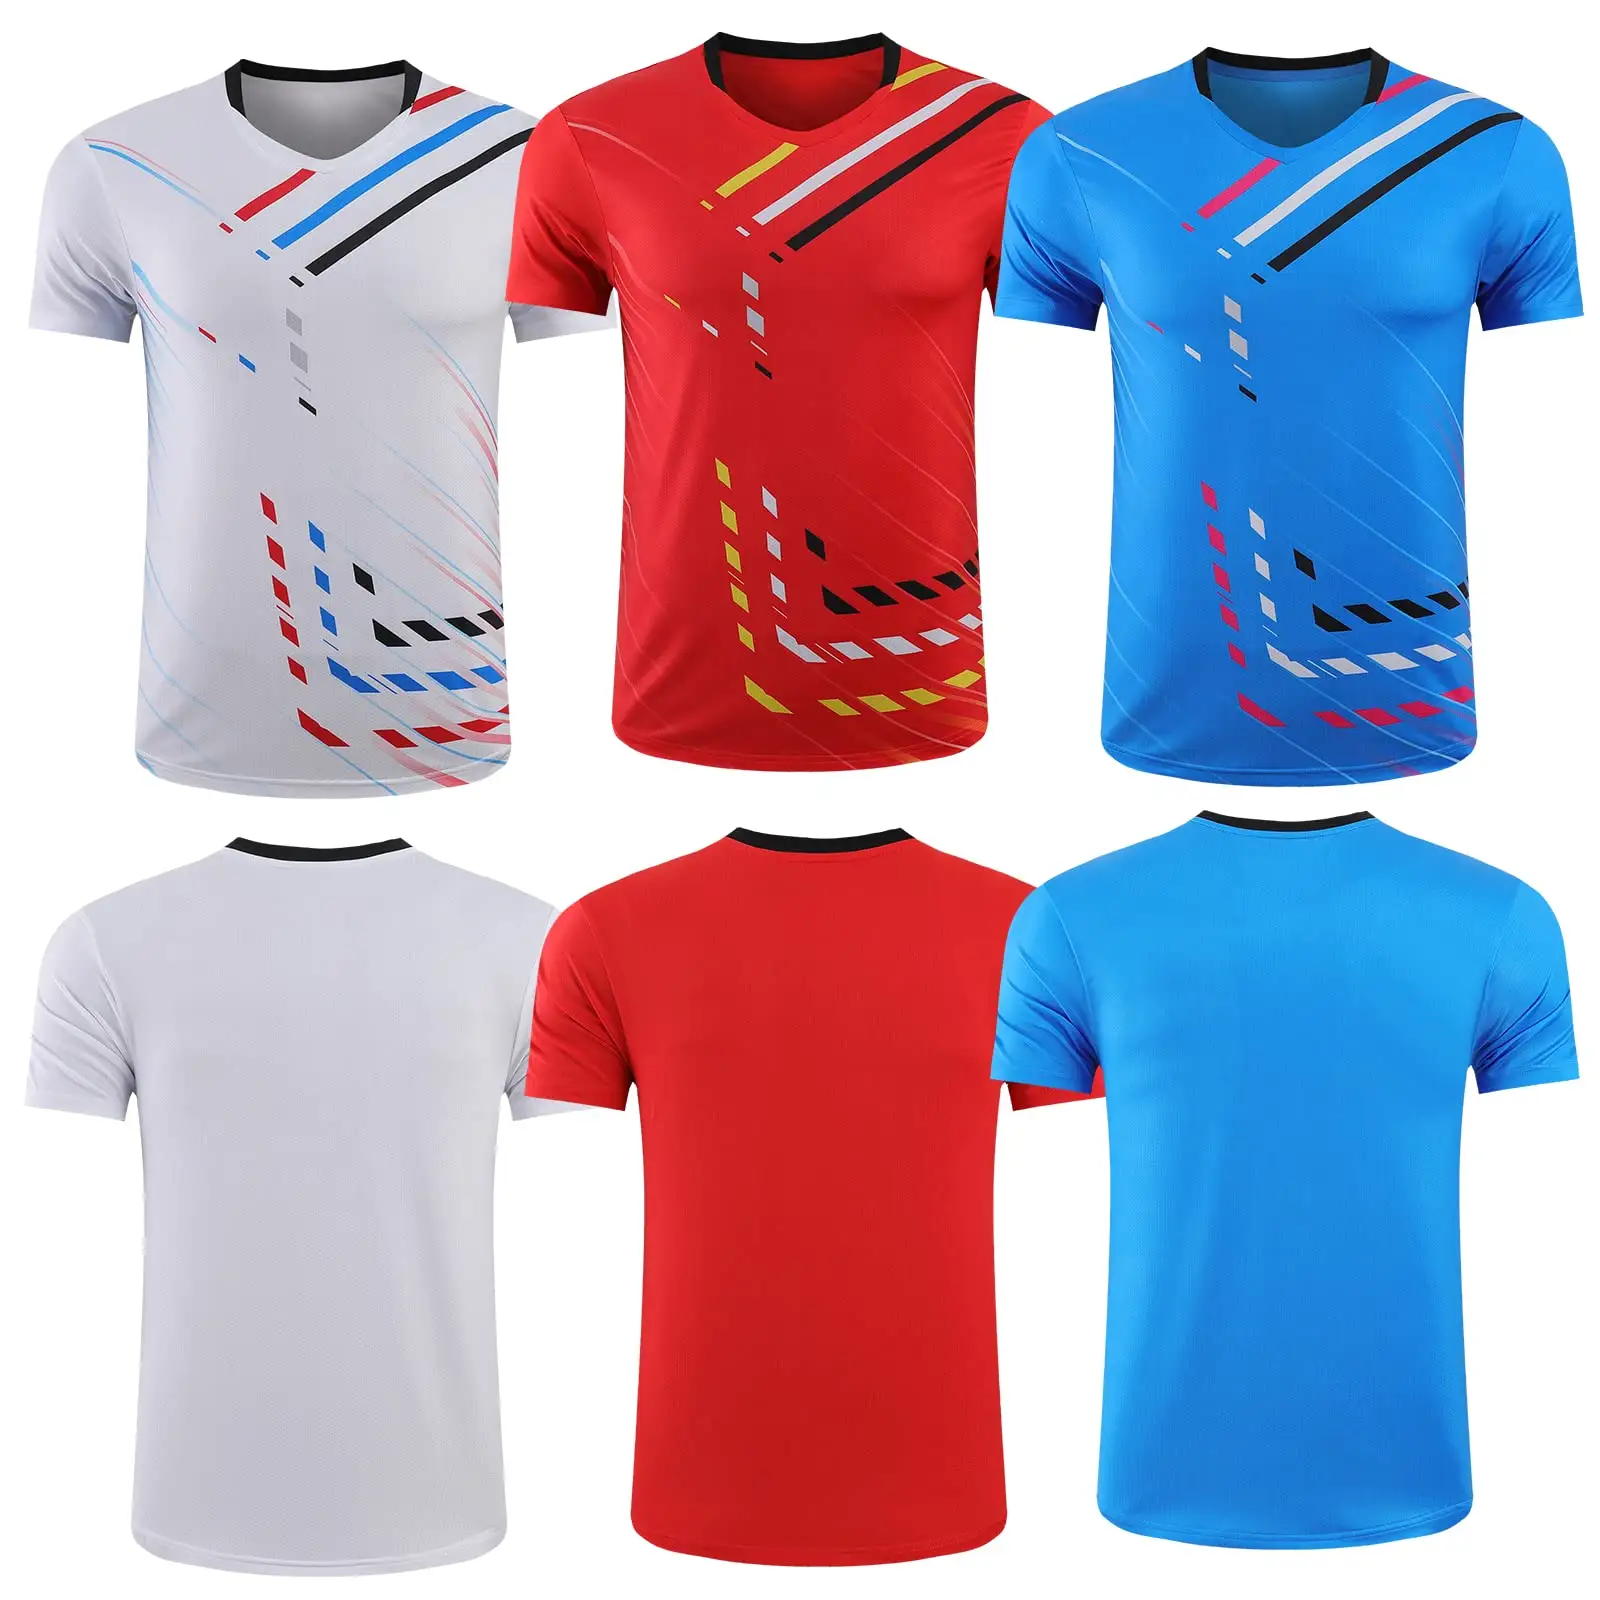 Novos homens voleibol camisa em poliéster malha tecido personalizado Wear Design Volley ball Jersey